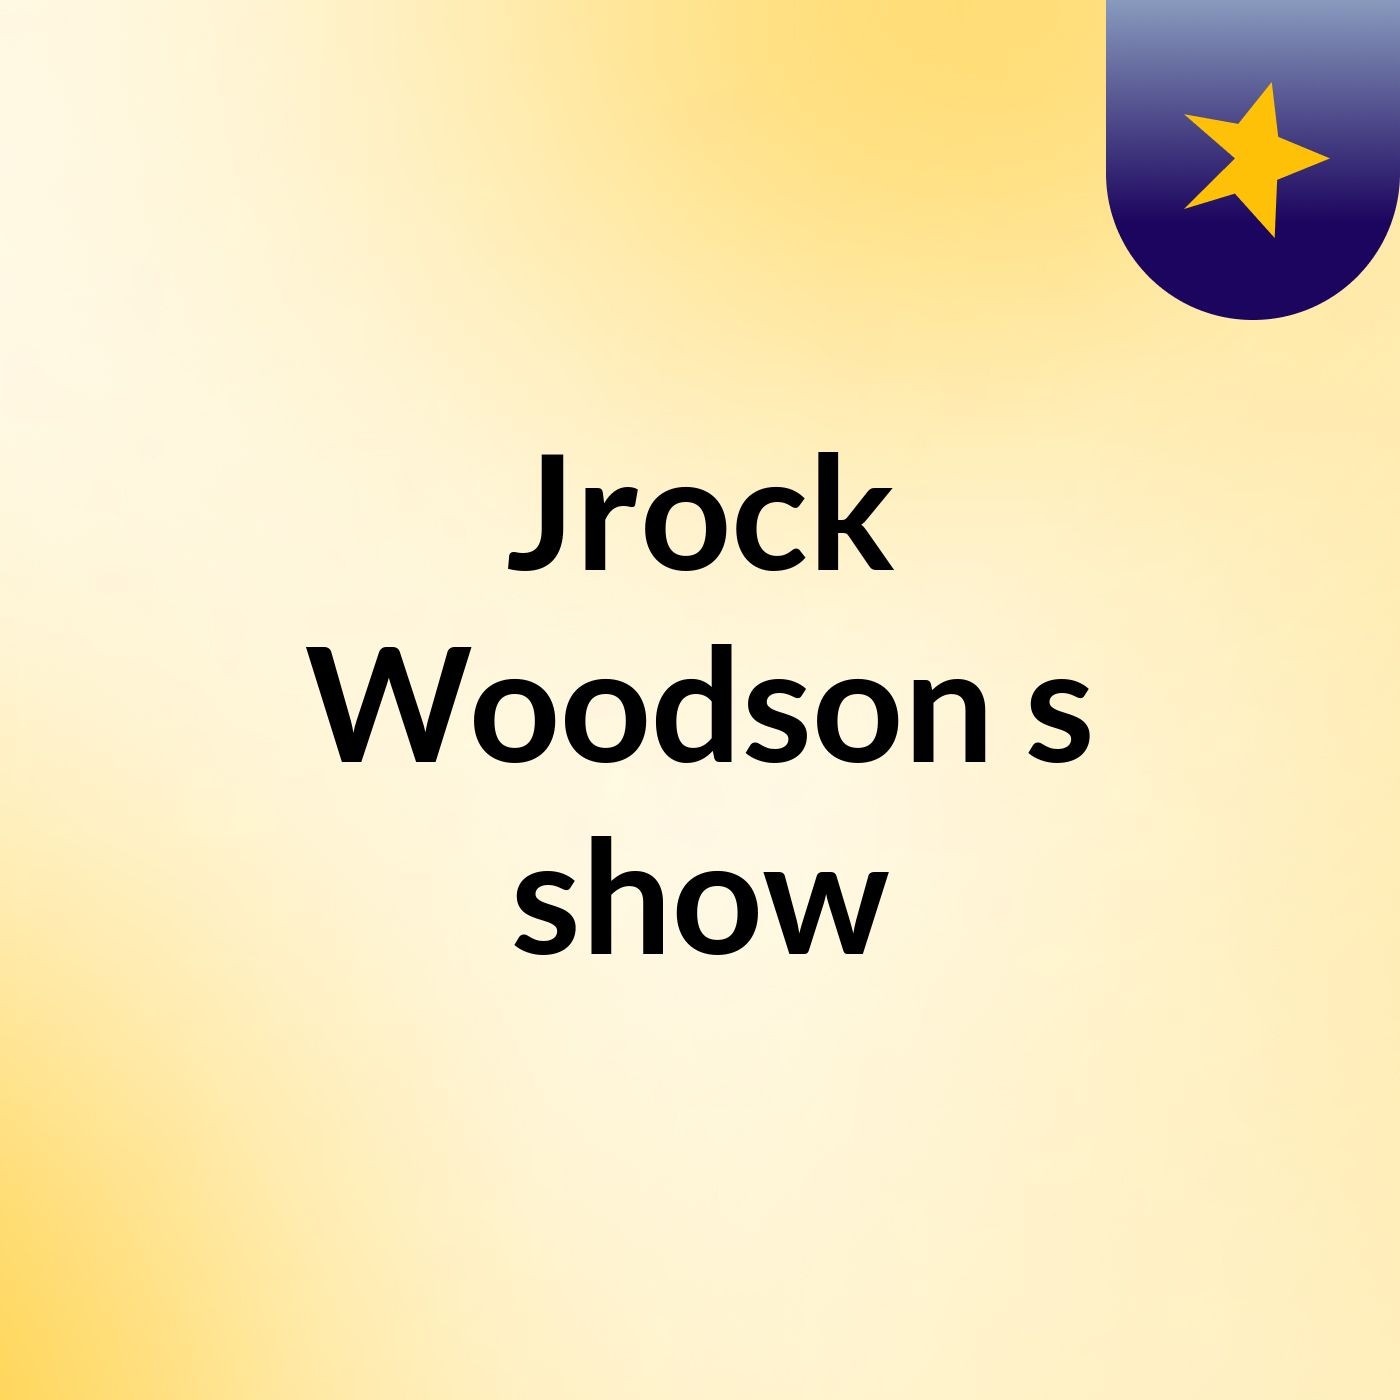 Jrock Woodson's show